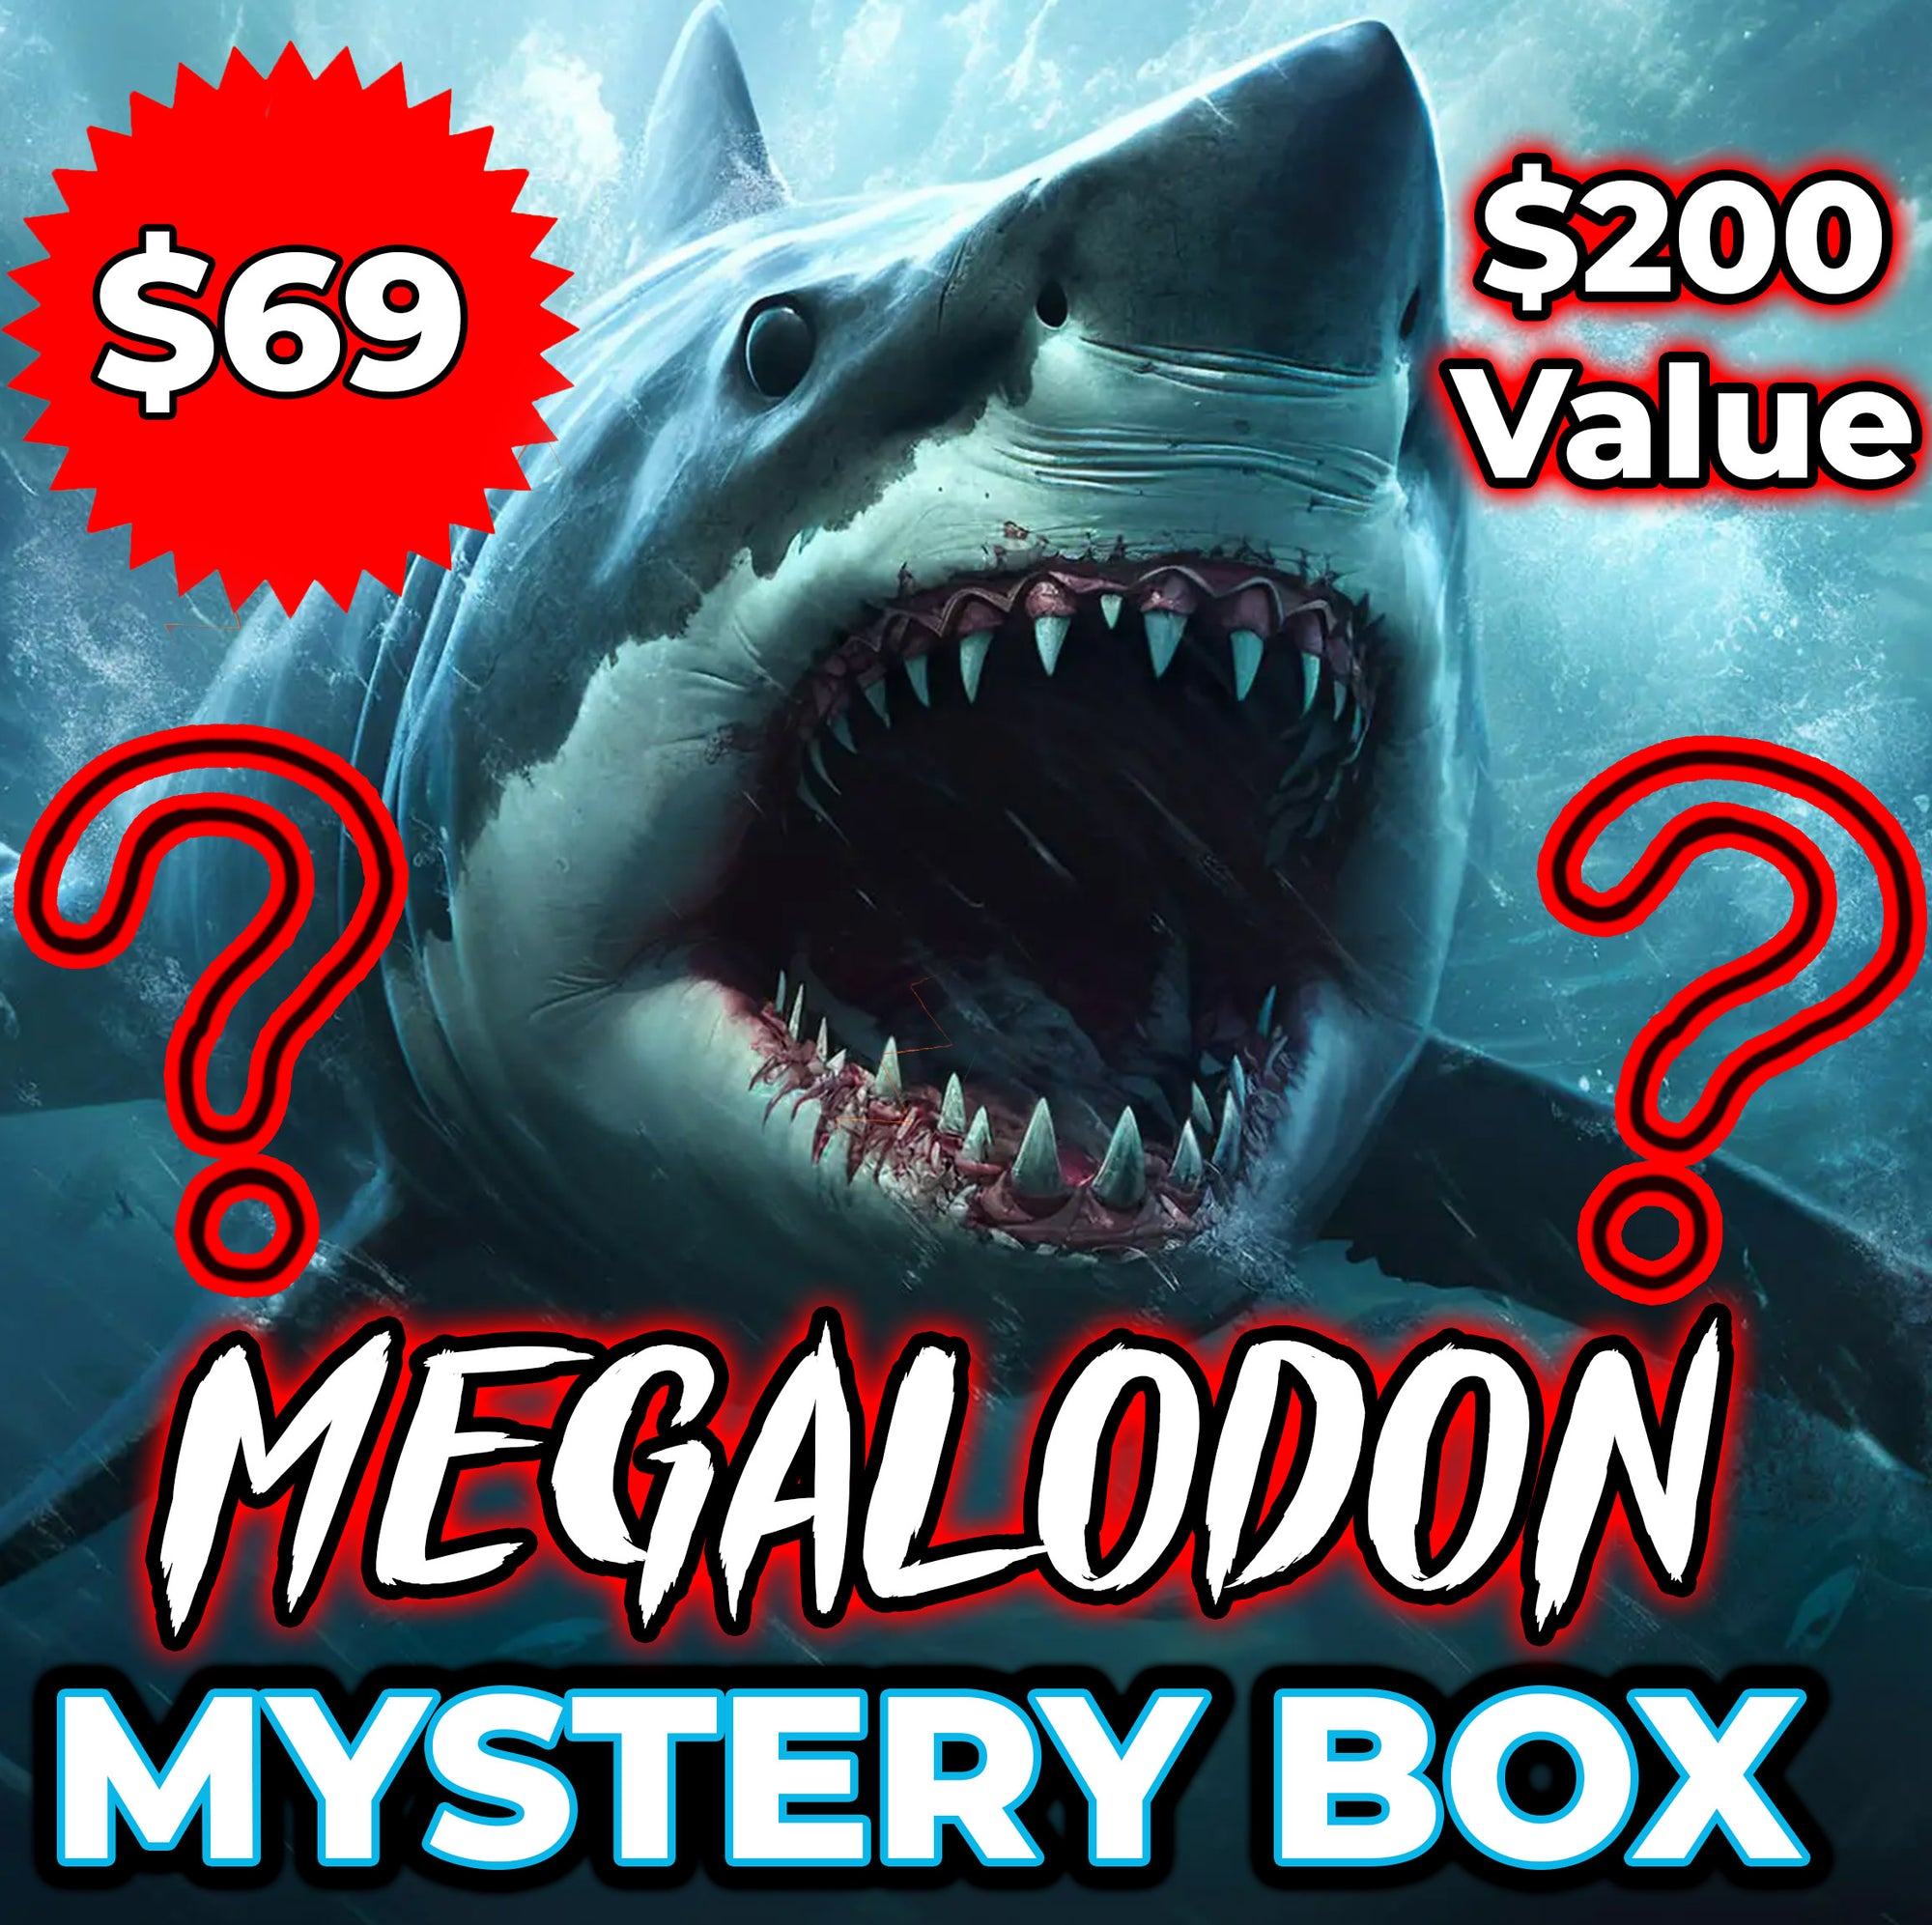 MEGALODON MYSTERY BOX!!